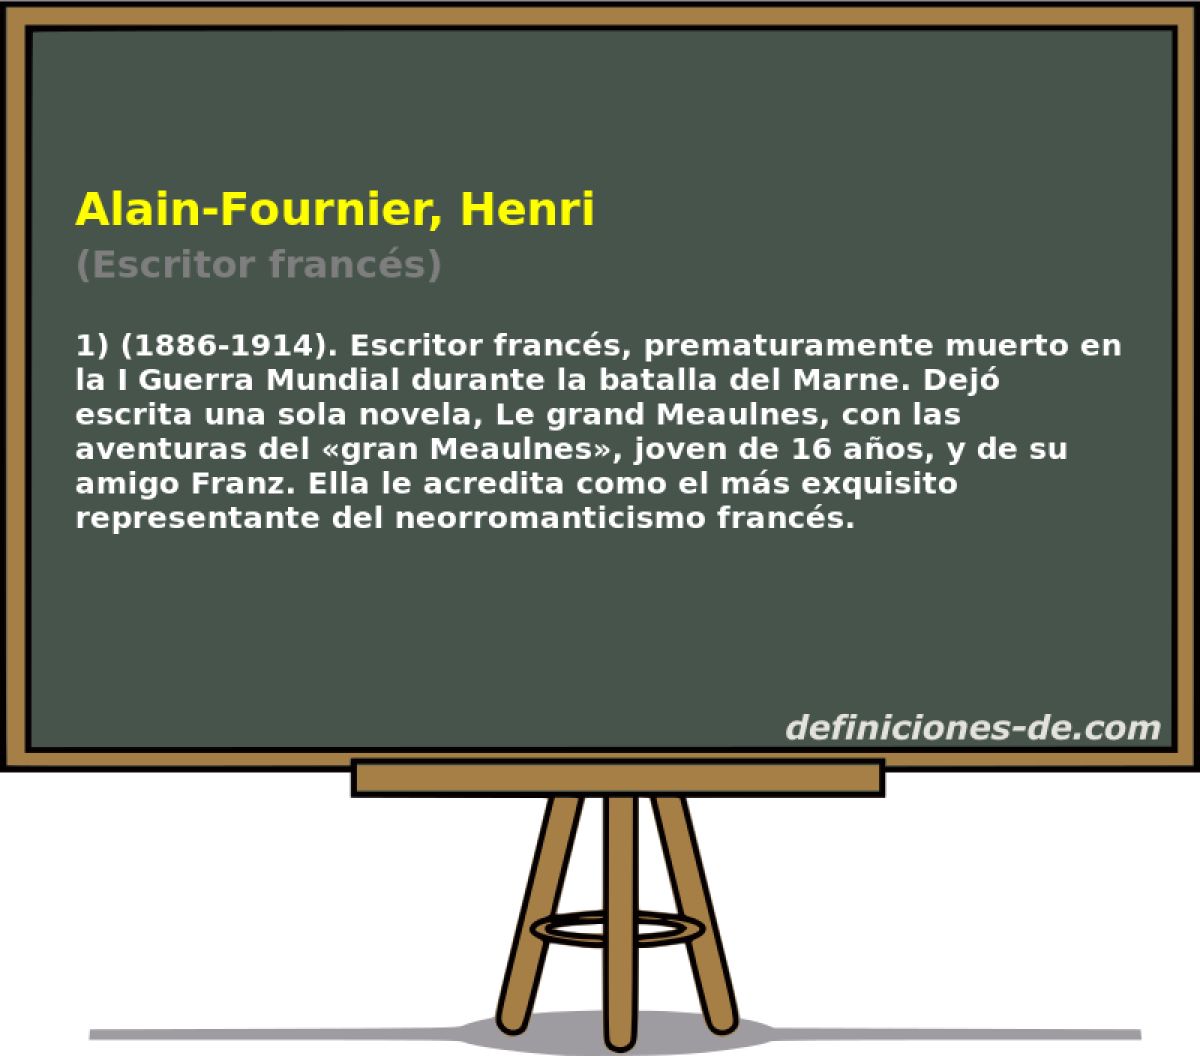 Alain-Fournier, Henri (Escritor francs)